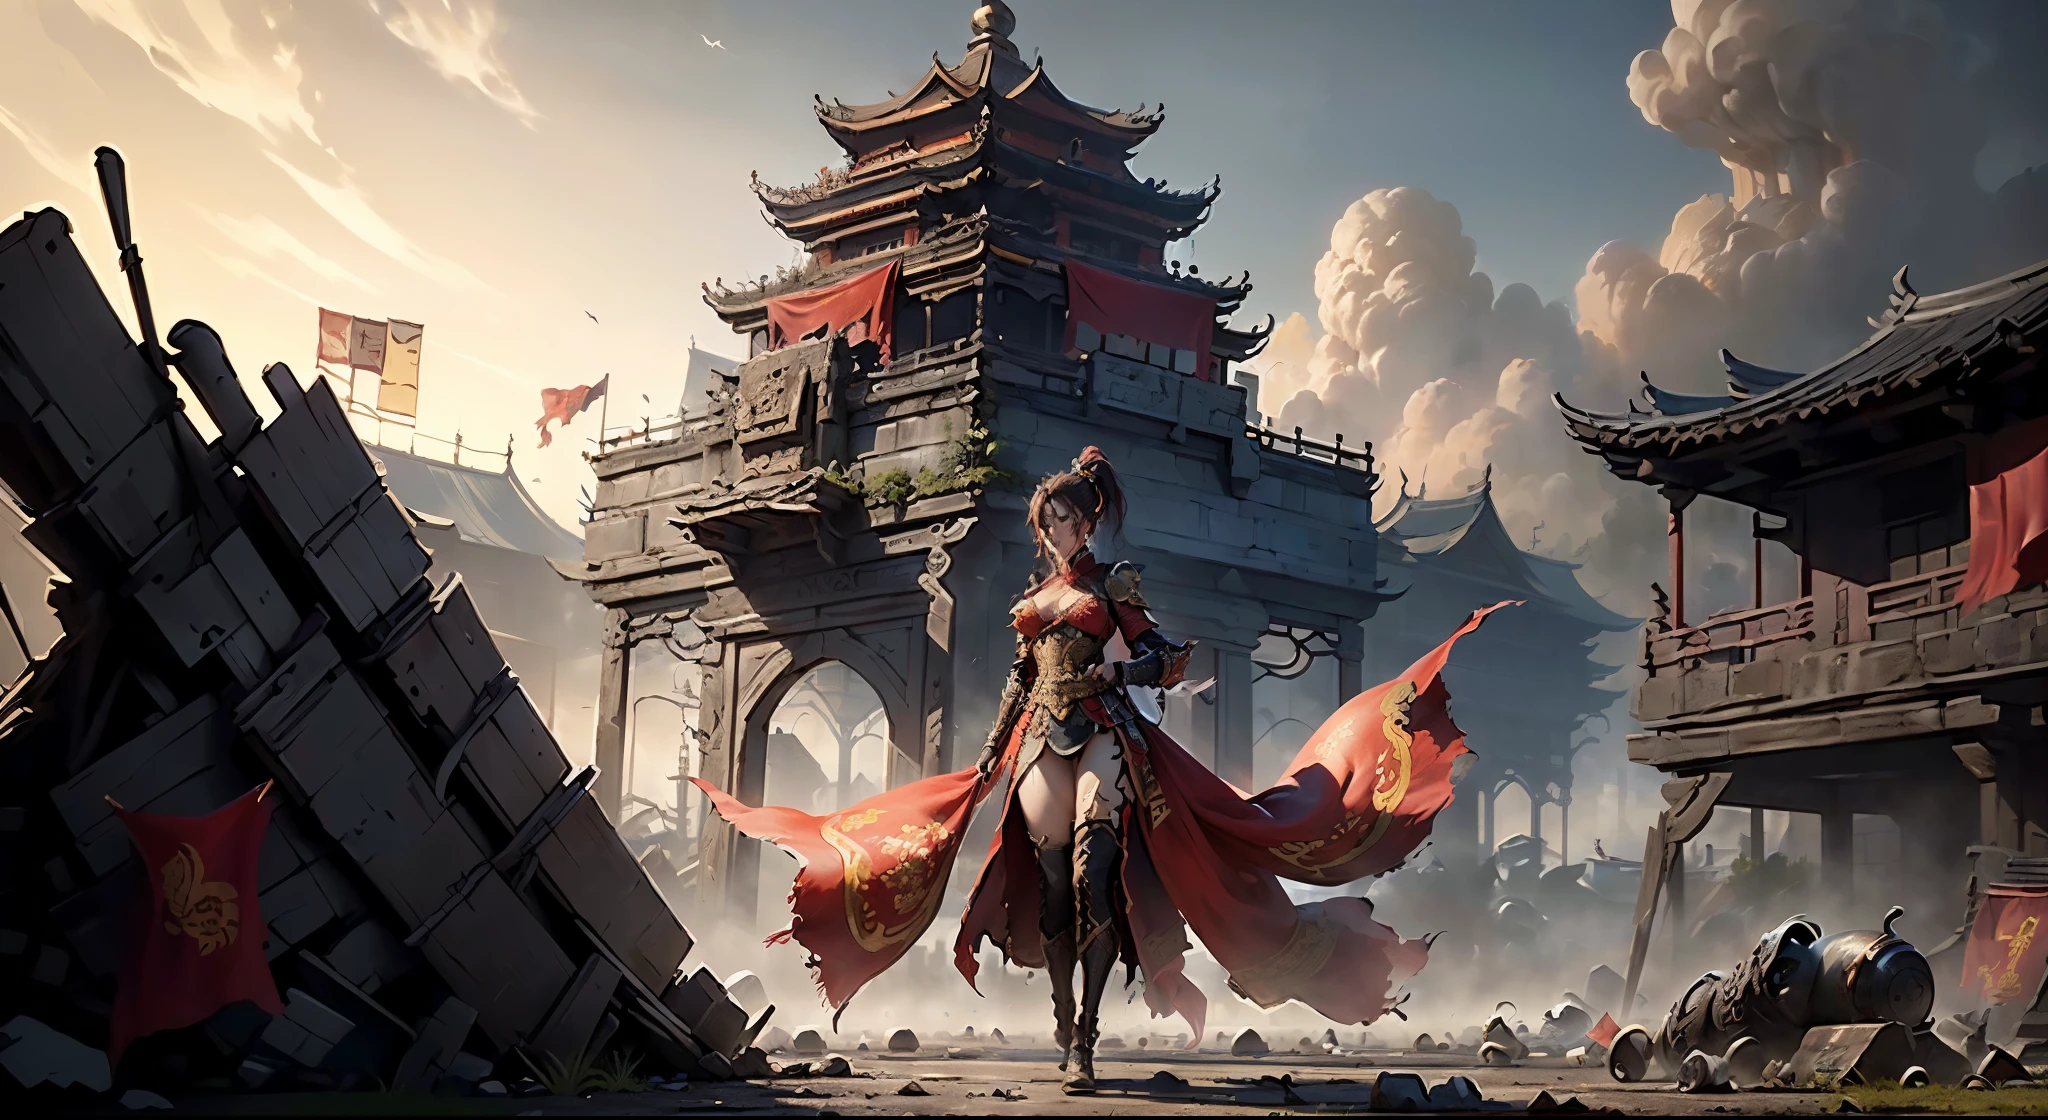 ((壮大な構成，中国の古代戦場，鎧を着た女性がぼろぼろになった赤い旗を持っている，いたるところに死体，豊富なシーン詳細，包囲，遠くに高い城門が見える))，((8K+超高解像度+超高解像度+傑作+詳細)),(ハイポニーテール)